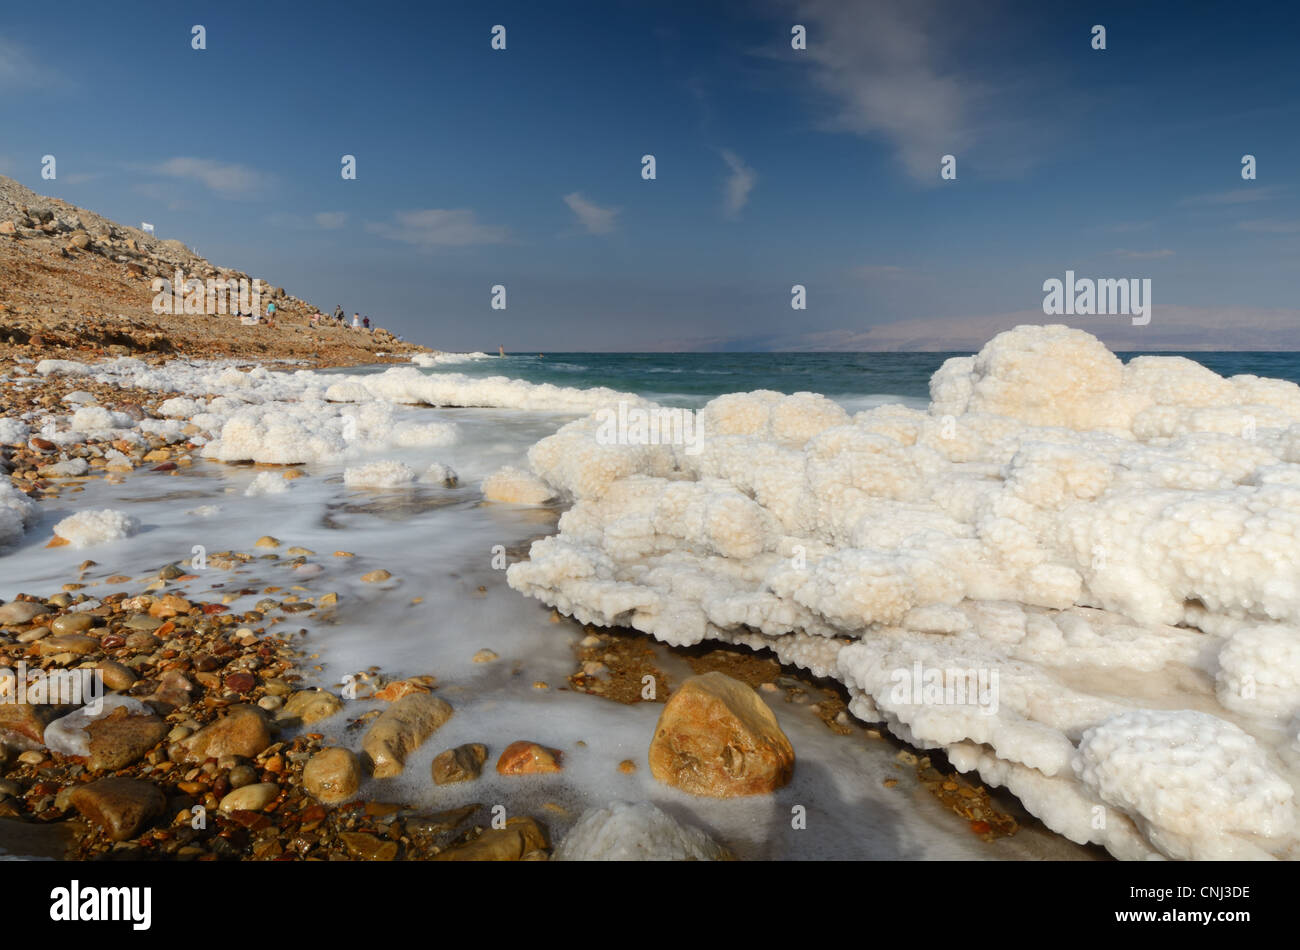 Salzformationen im Toten Meer in Israel in der Nähe der Stadt Ein Gedi. Stockfoto